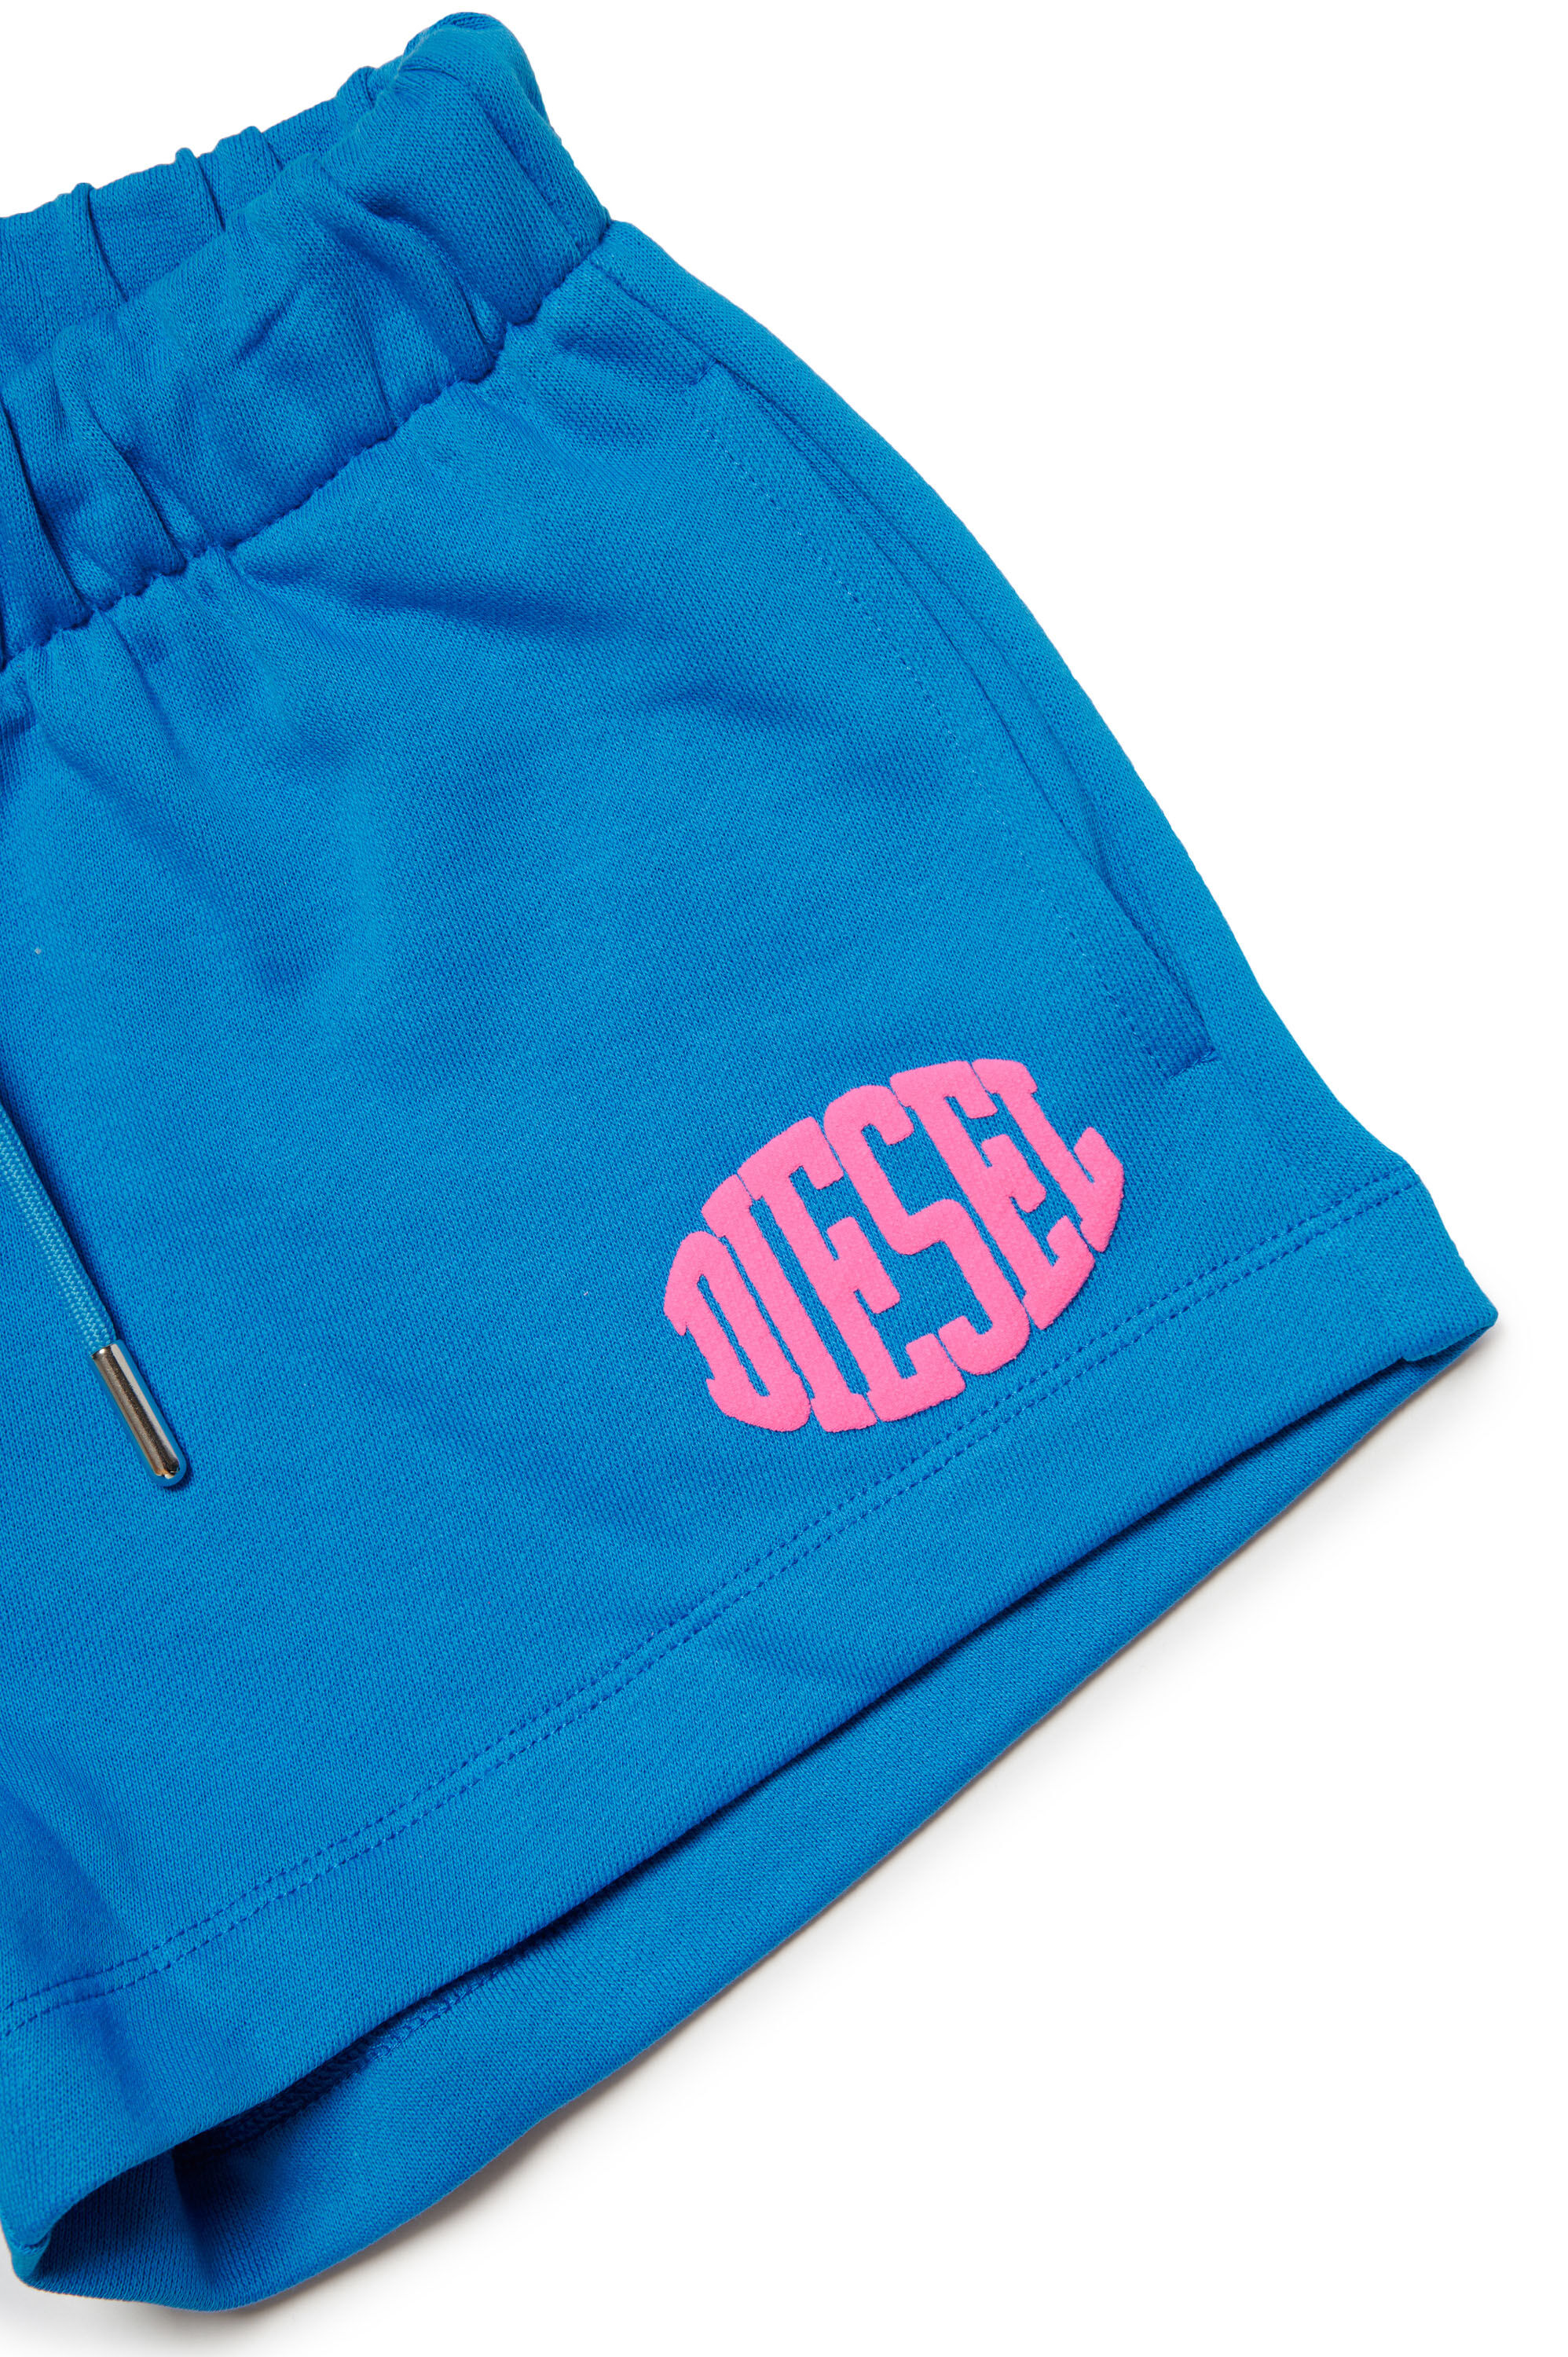 Diesel - PAGLIFE, Mujer Pantalones cortos deportivos con logotipo Oval D acolchado in Azul marino - Image 3